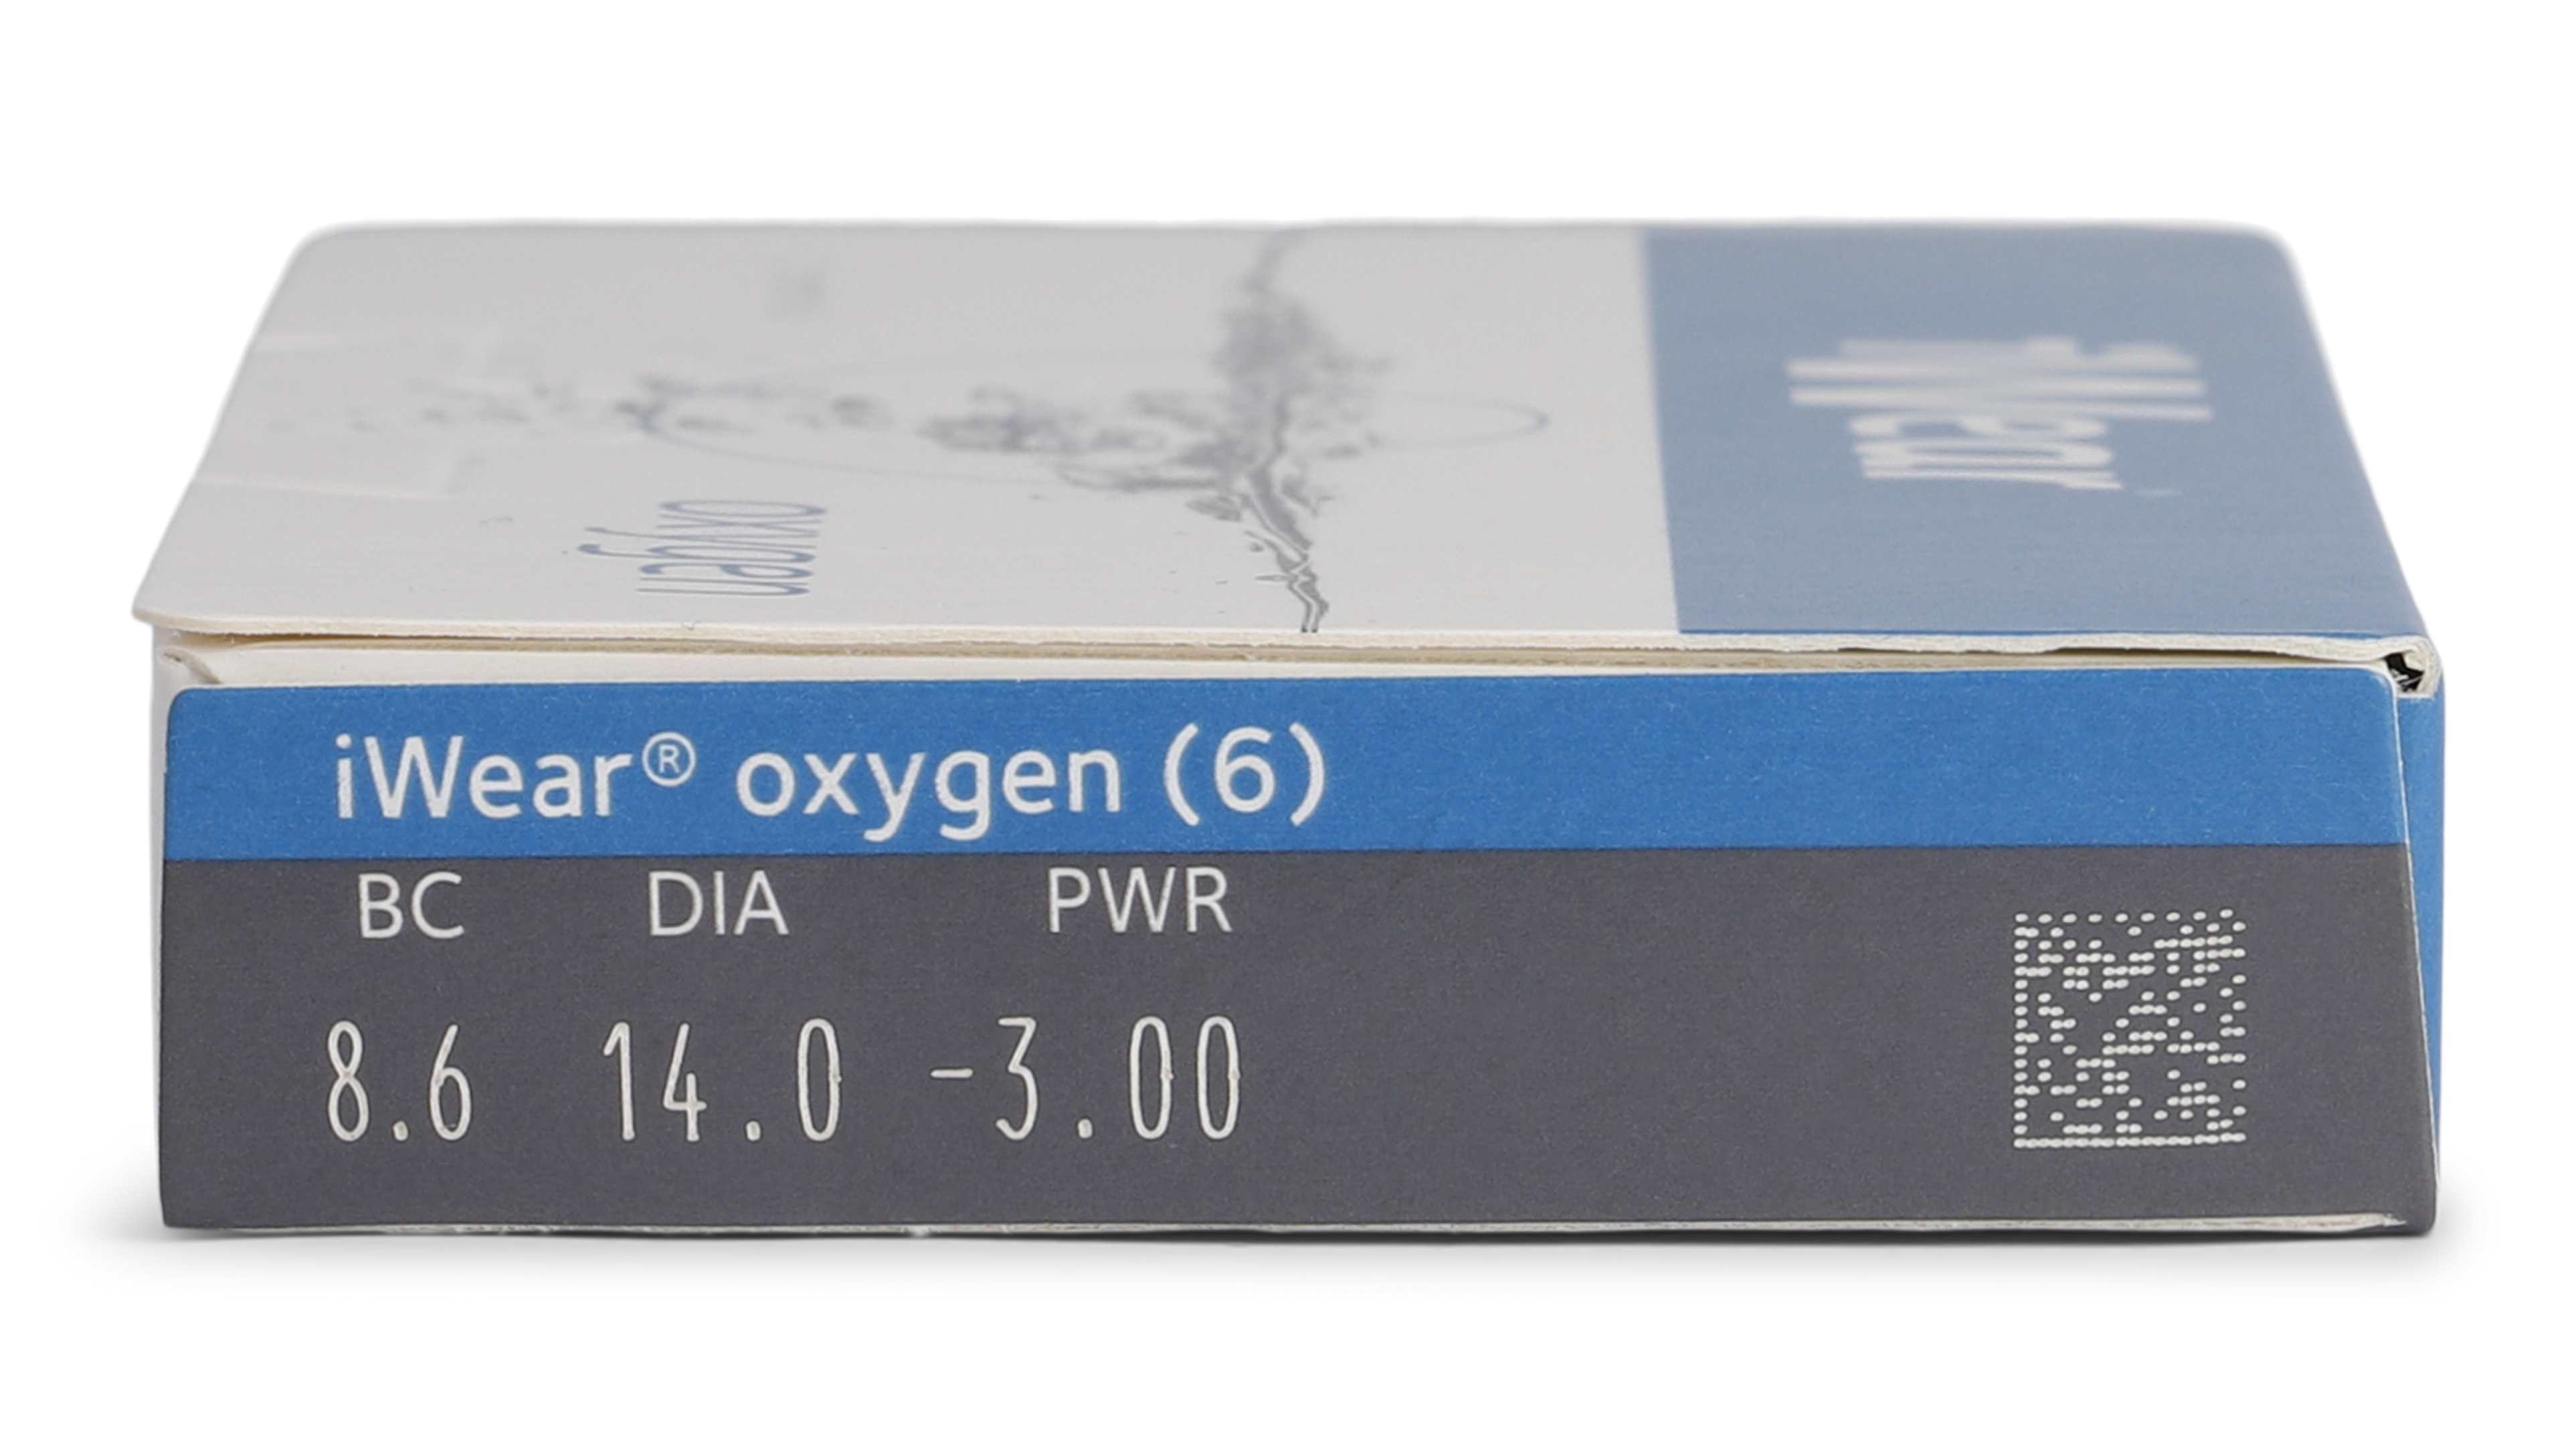 Parameter iWear iWear Oxygen Maandlenzen 6 lenzen per doosje